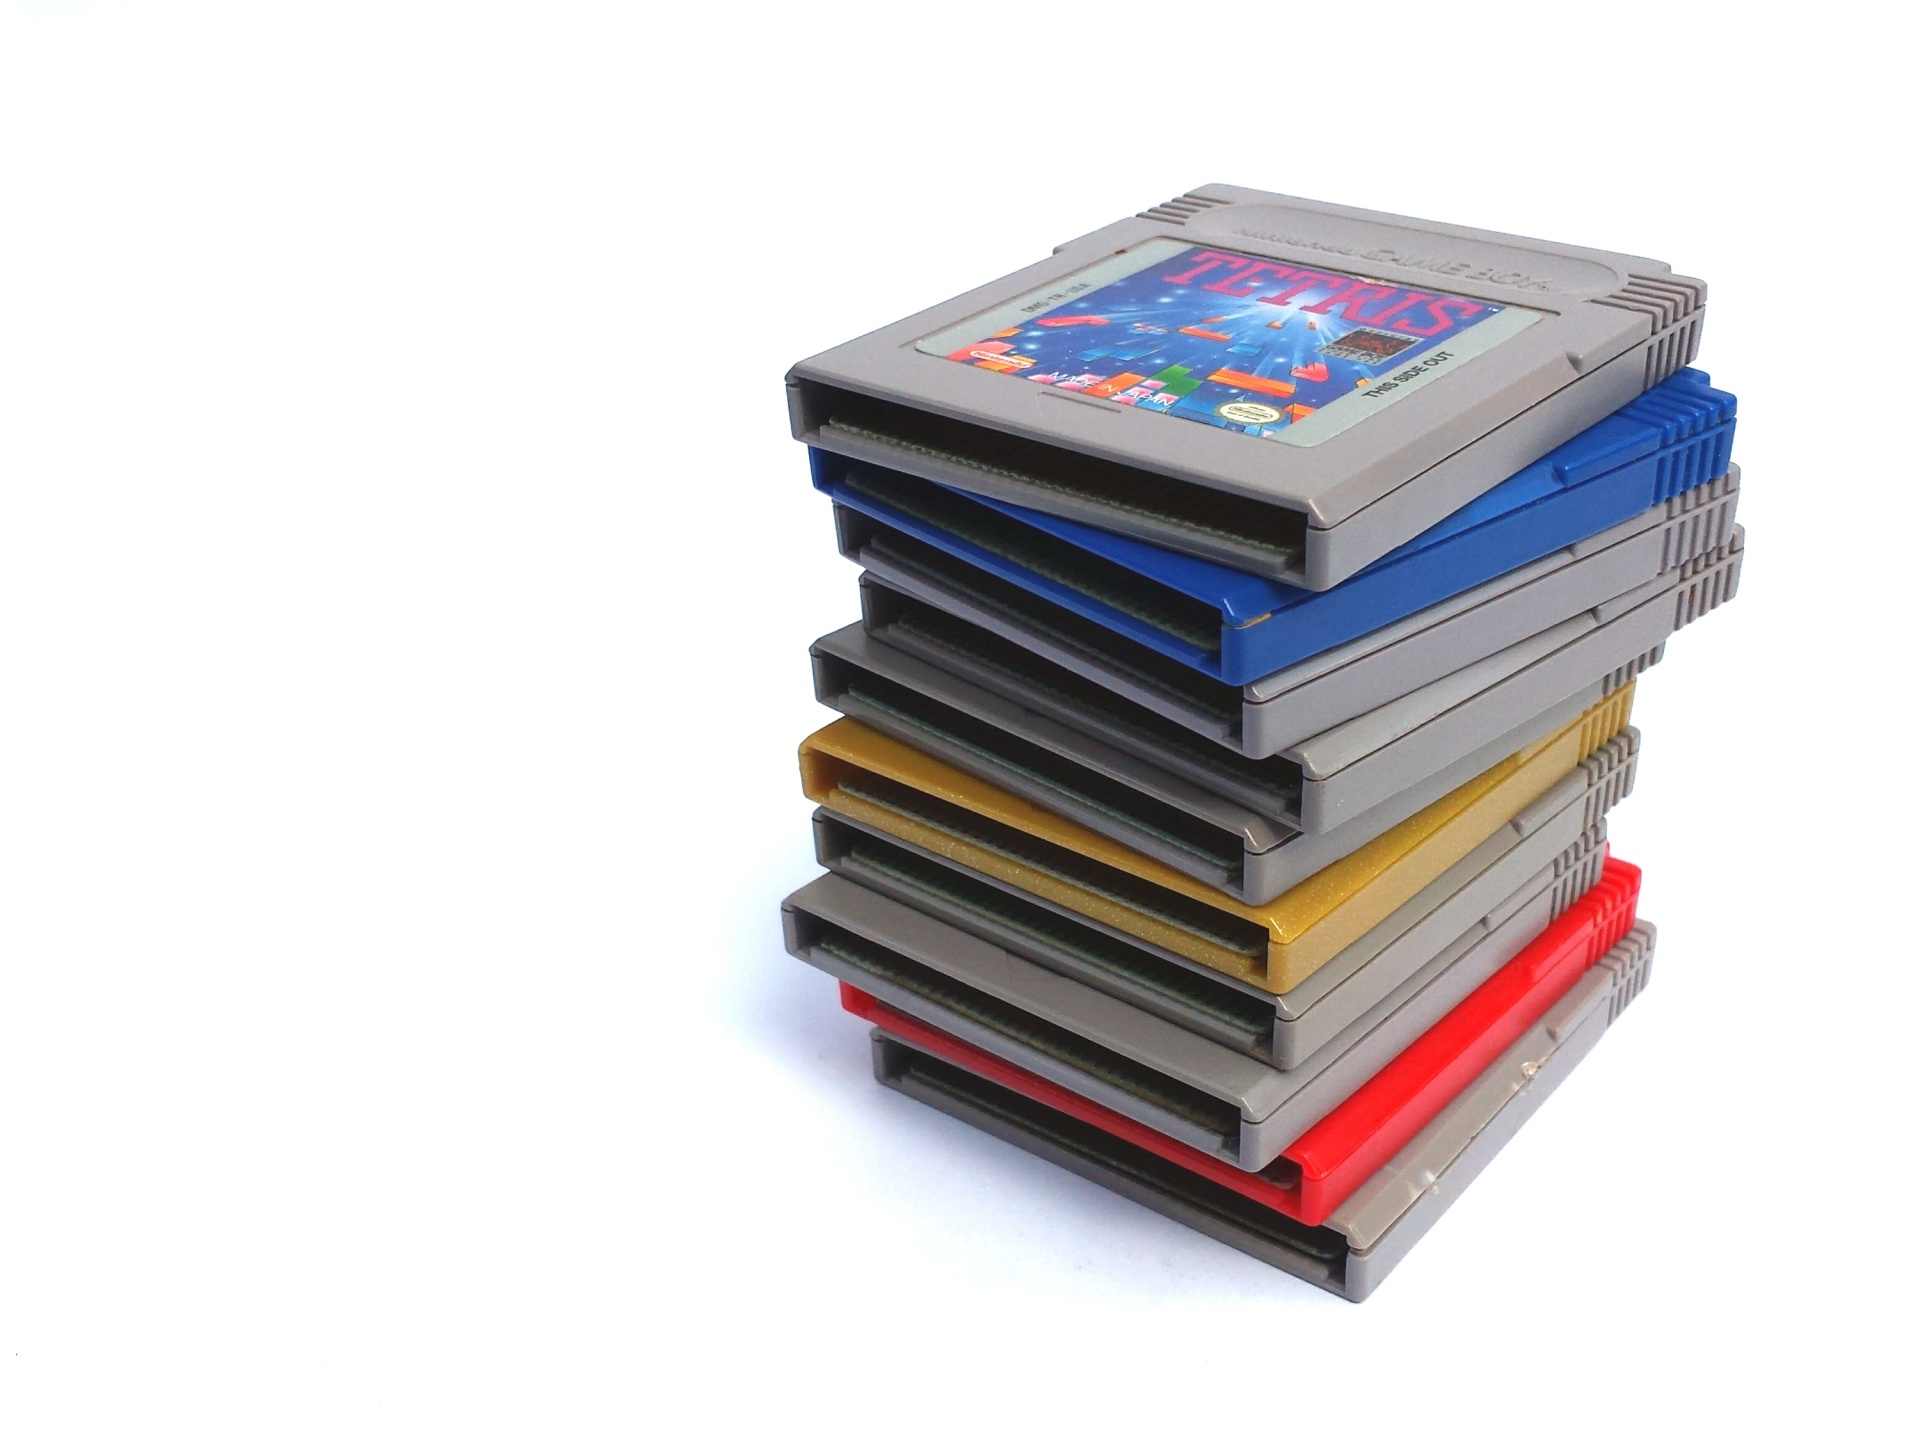 Pile Of Nintendo Game Boy Games